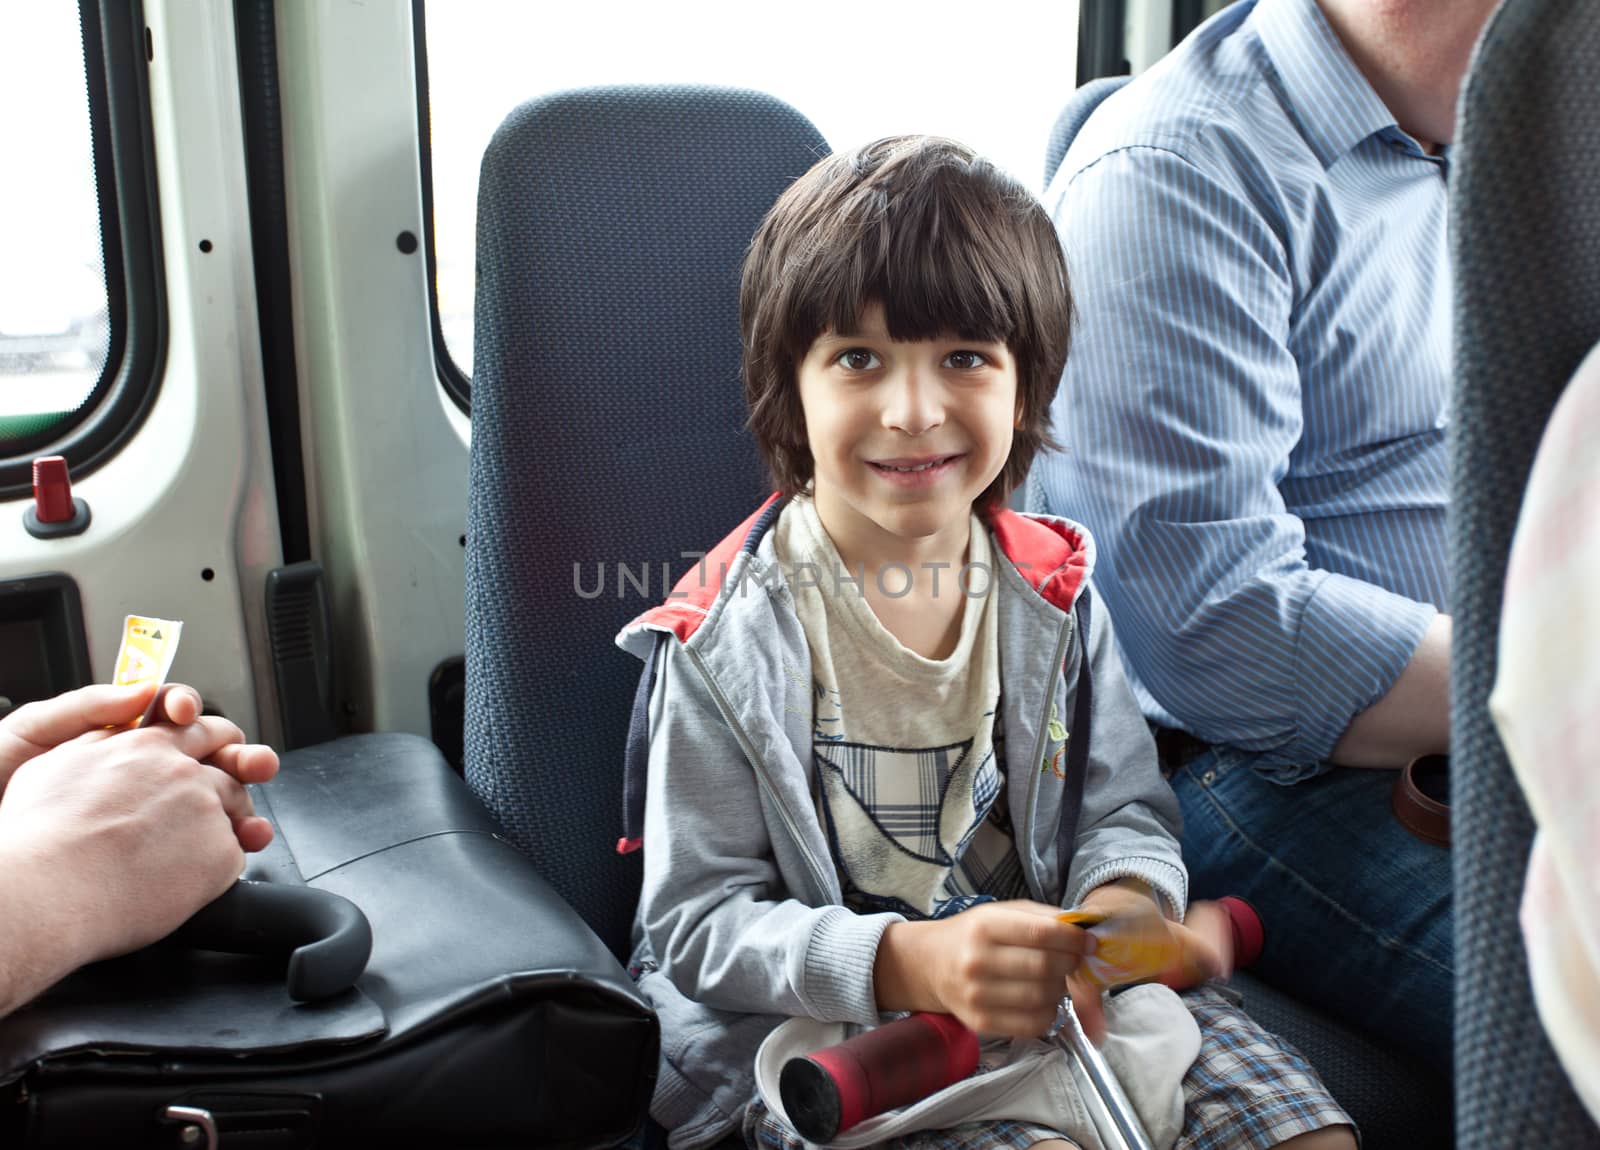 boy in a public transport